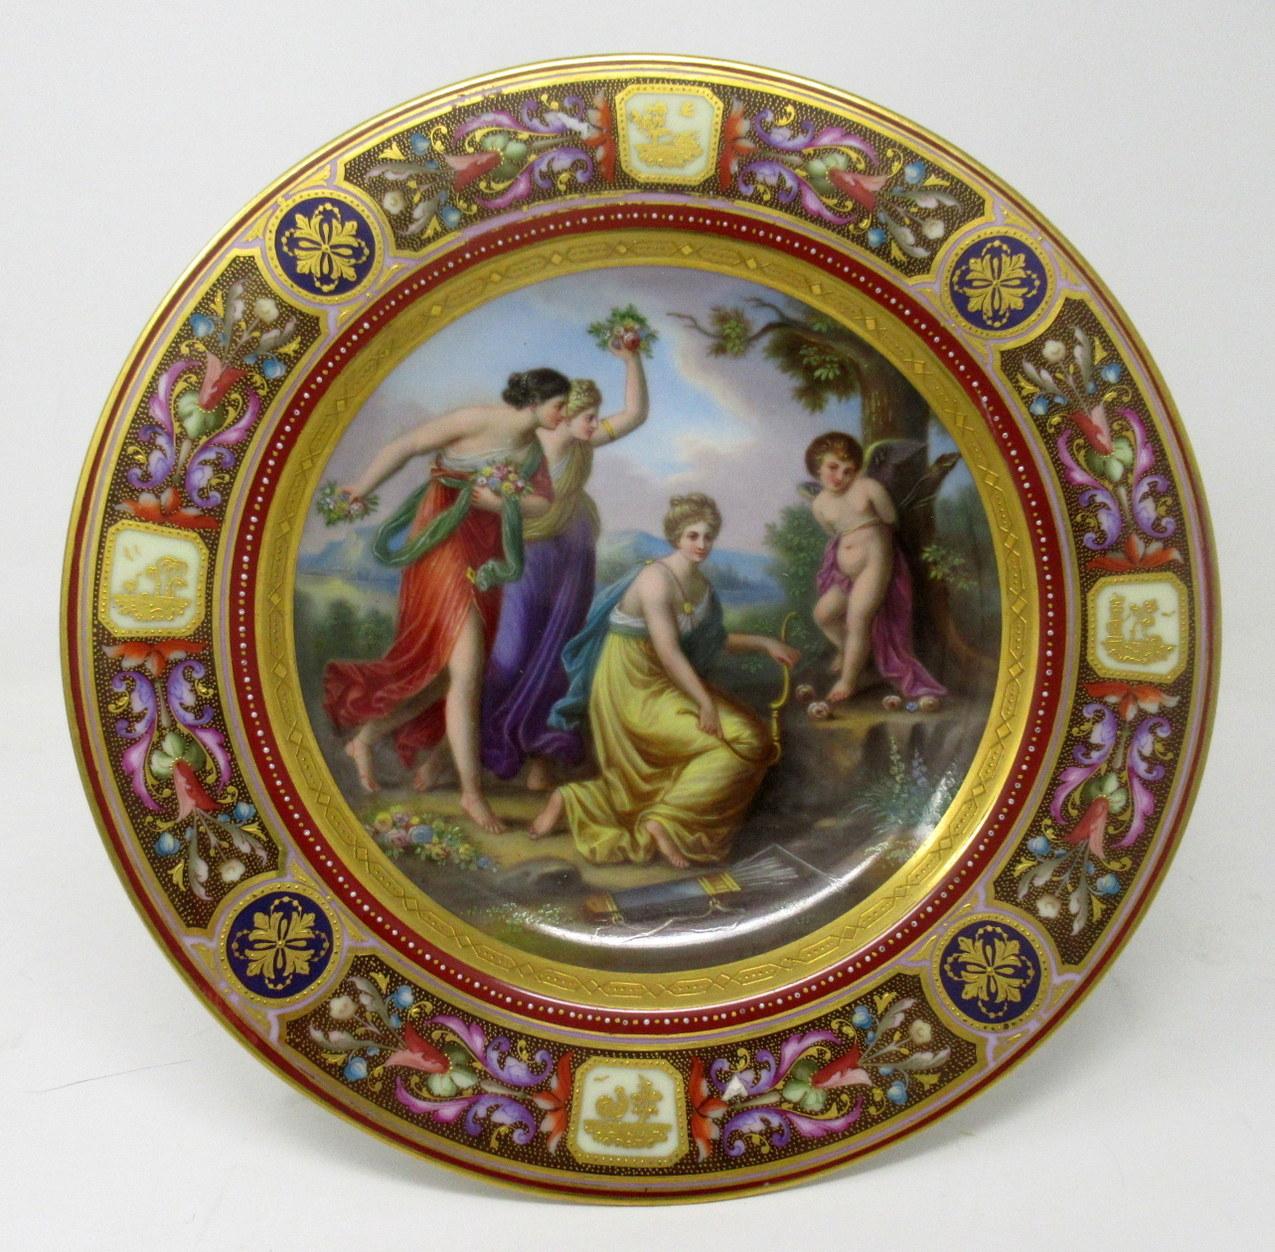 Une assiette à plat de qualité exceptionnelle, de forme circulaire, signée par un cabinet autrichien Royal Vienna, datant du début de l'époque édouardienne. Dernier quart du XIXe siècle. Signé en bas au centre KNOILLEZ, un artiste très respecté qui